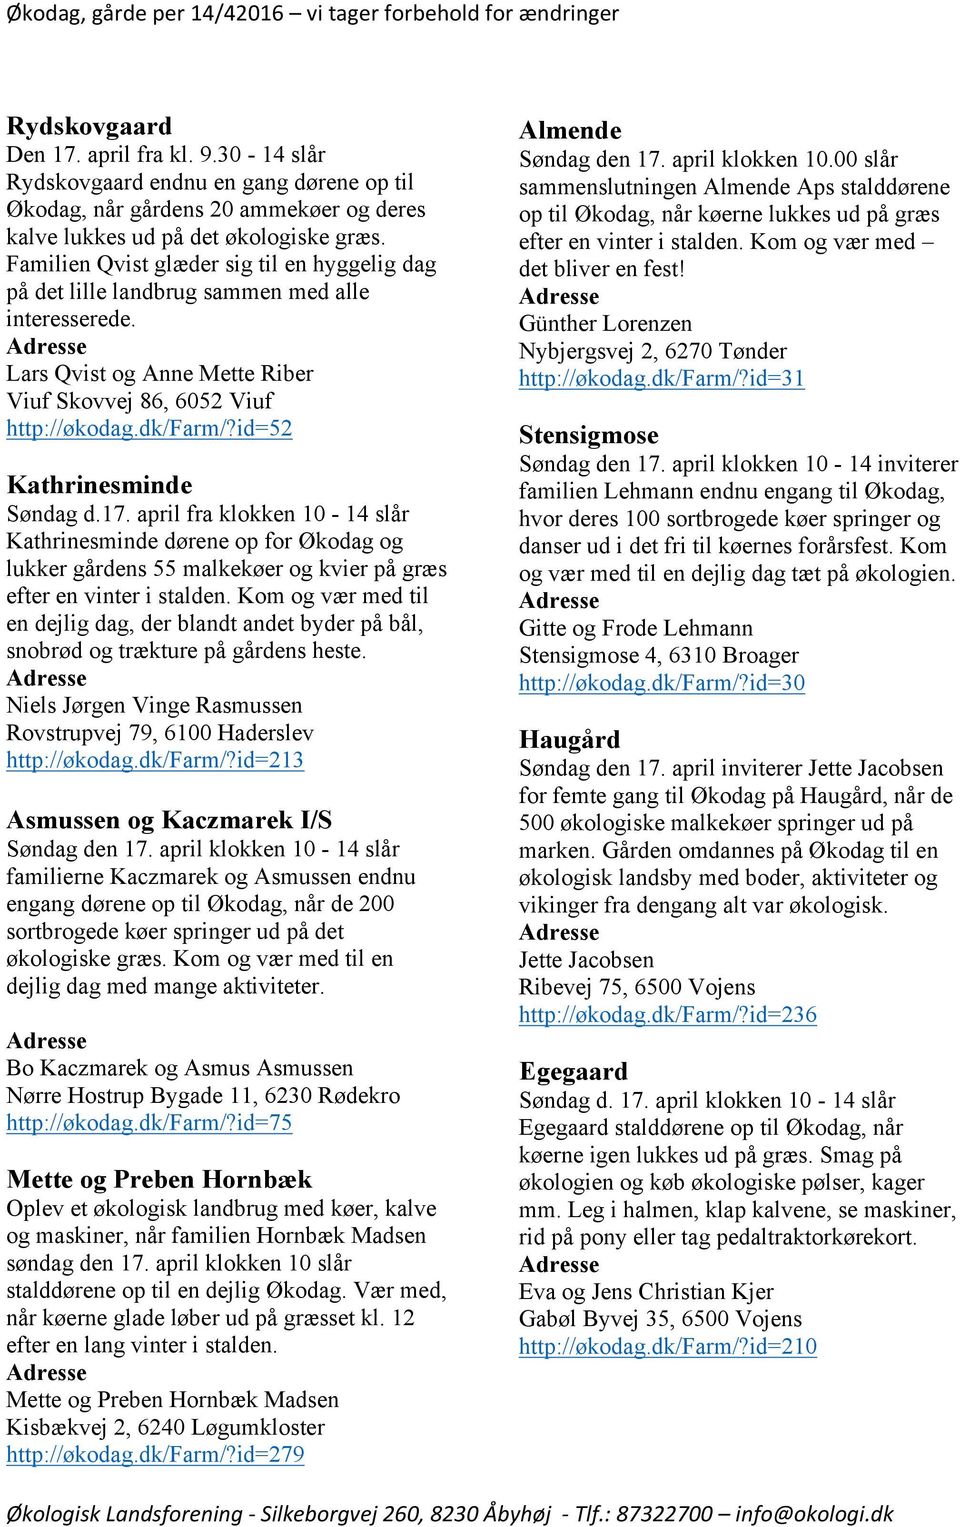 SJÆLLAND og Økodag, gårde per 14/42016 tager forbehold for ændringer - PDF Free Download